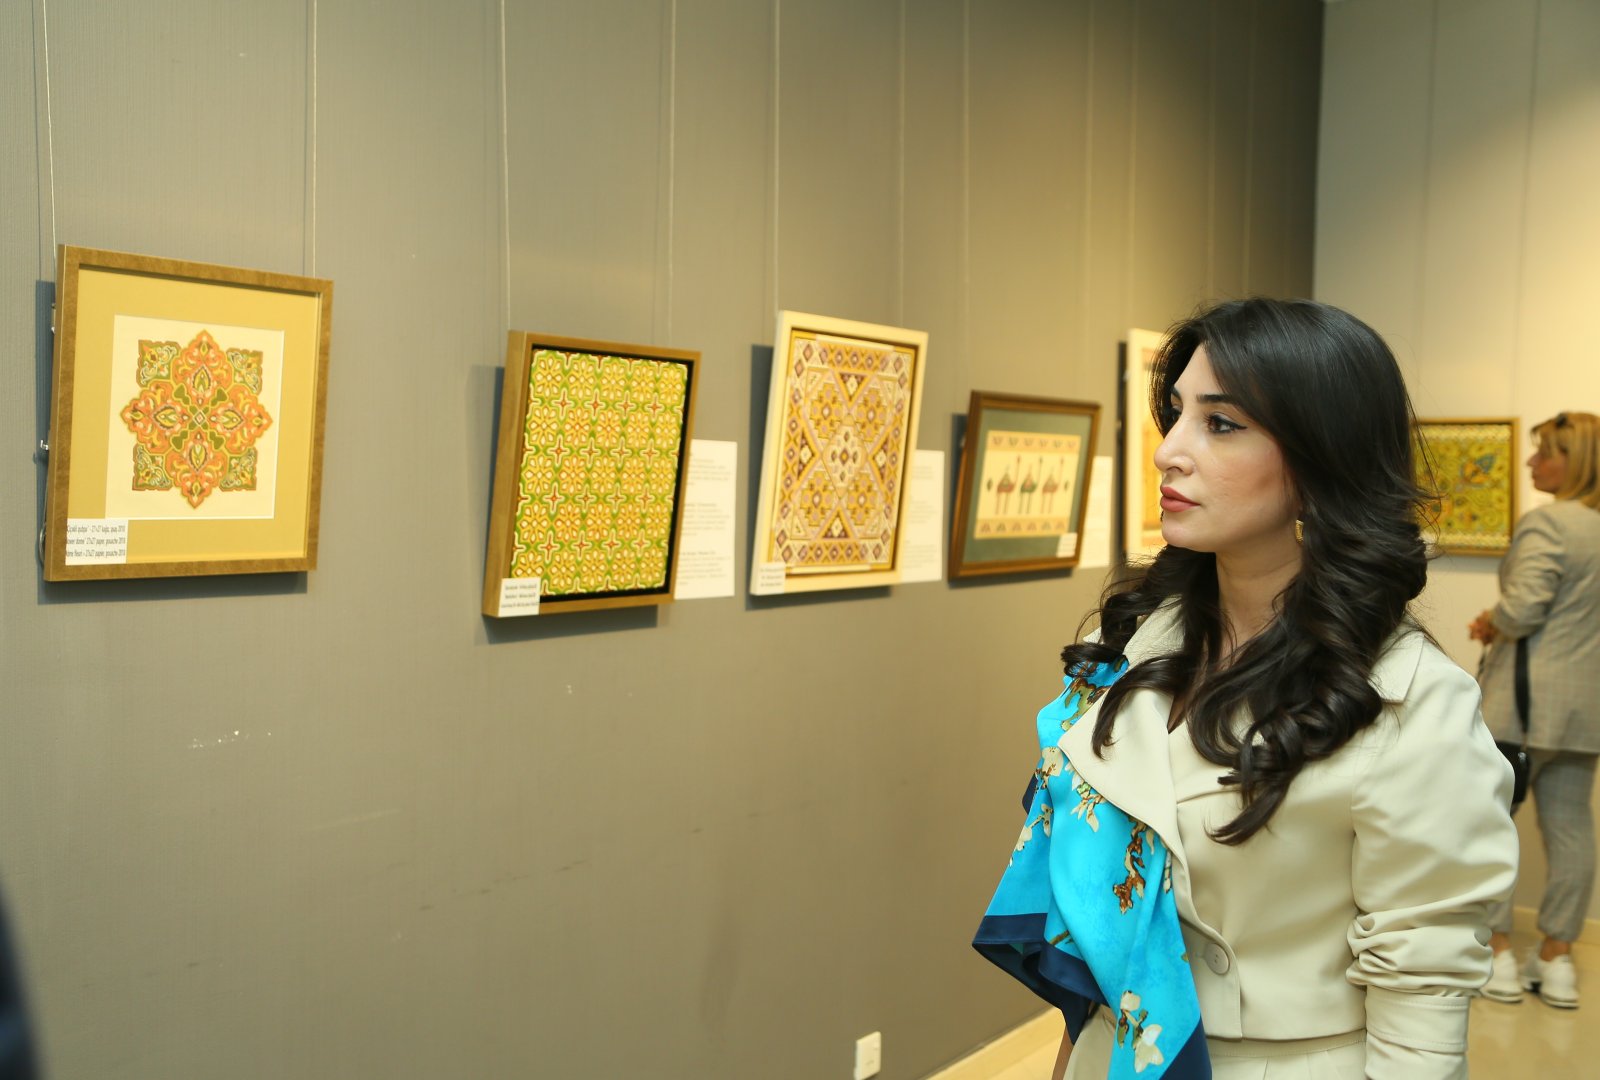 В Баку открылась выставка работ Фидан Амировой "По следам узоров..." – яркие краски души художницы  (ФОТО)